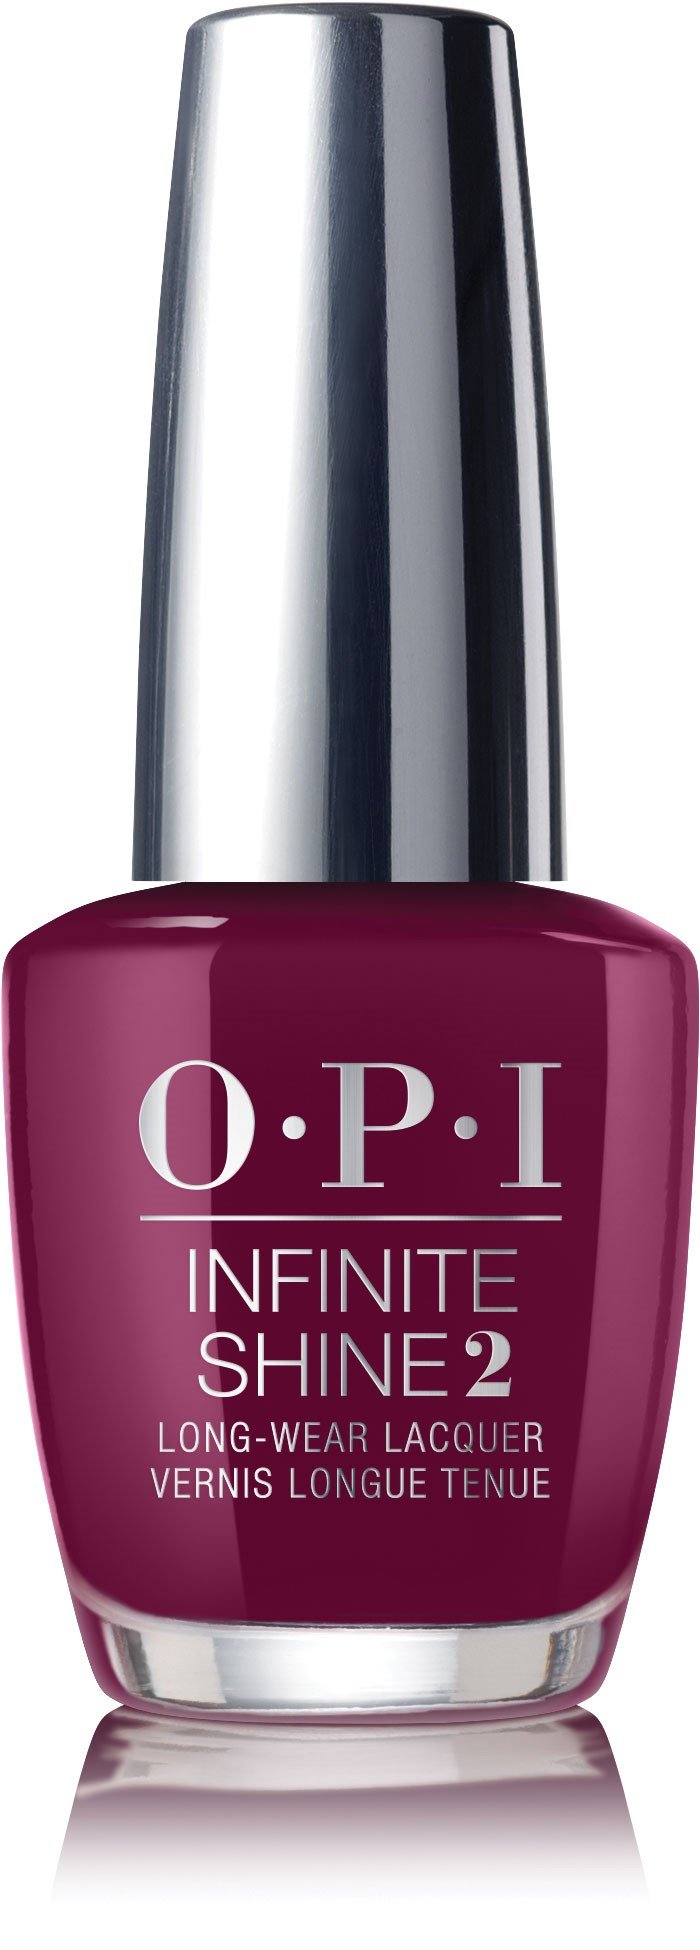 OPI Infinite Shine - En el carril del teleférico-piscina